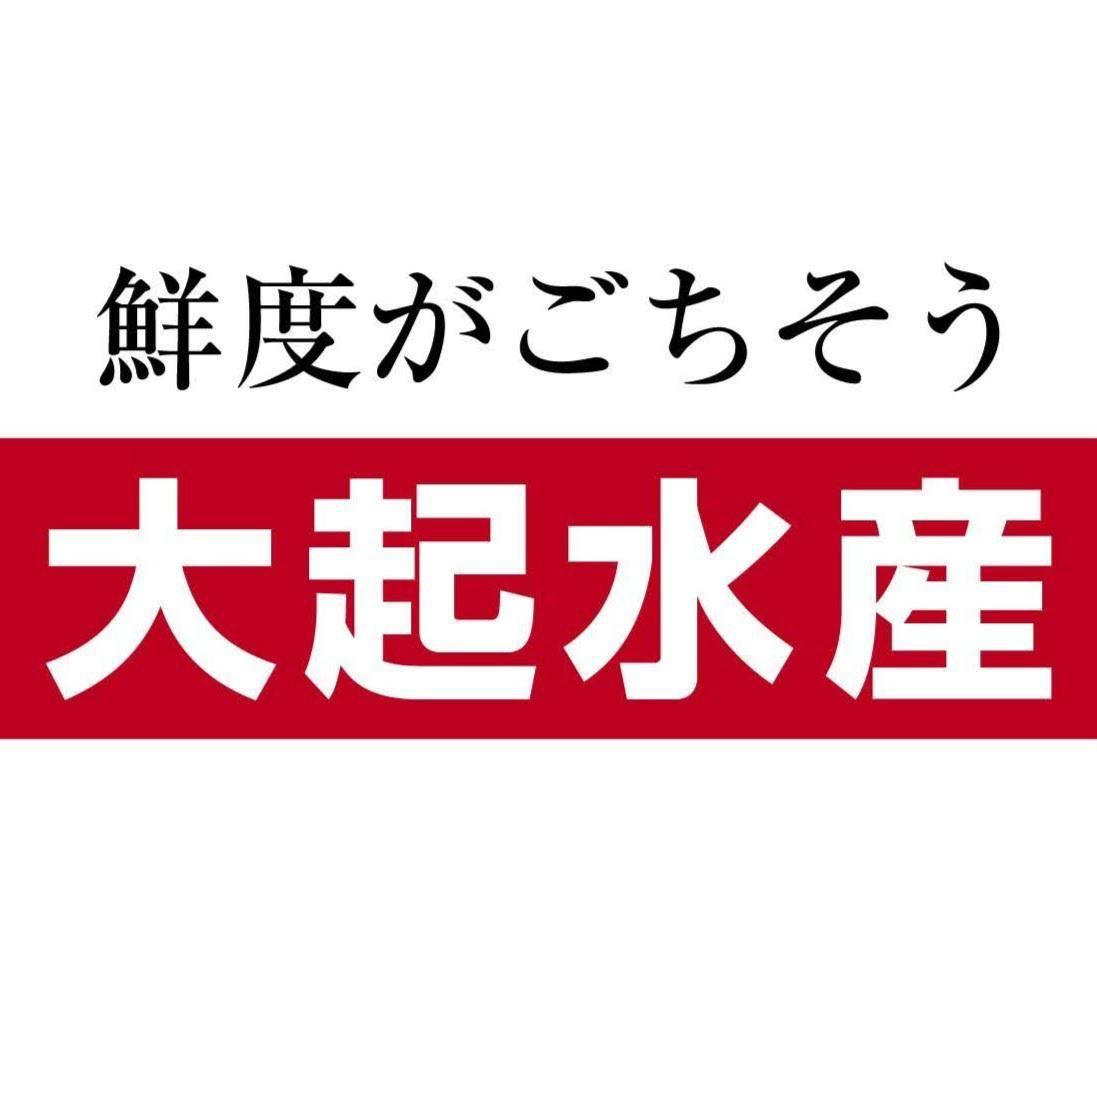 大起水産回転寿司 ホワイティうめだ店 Logo